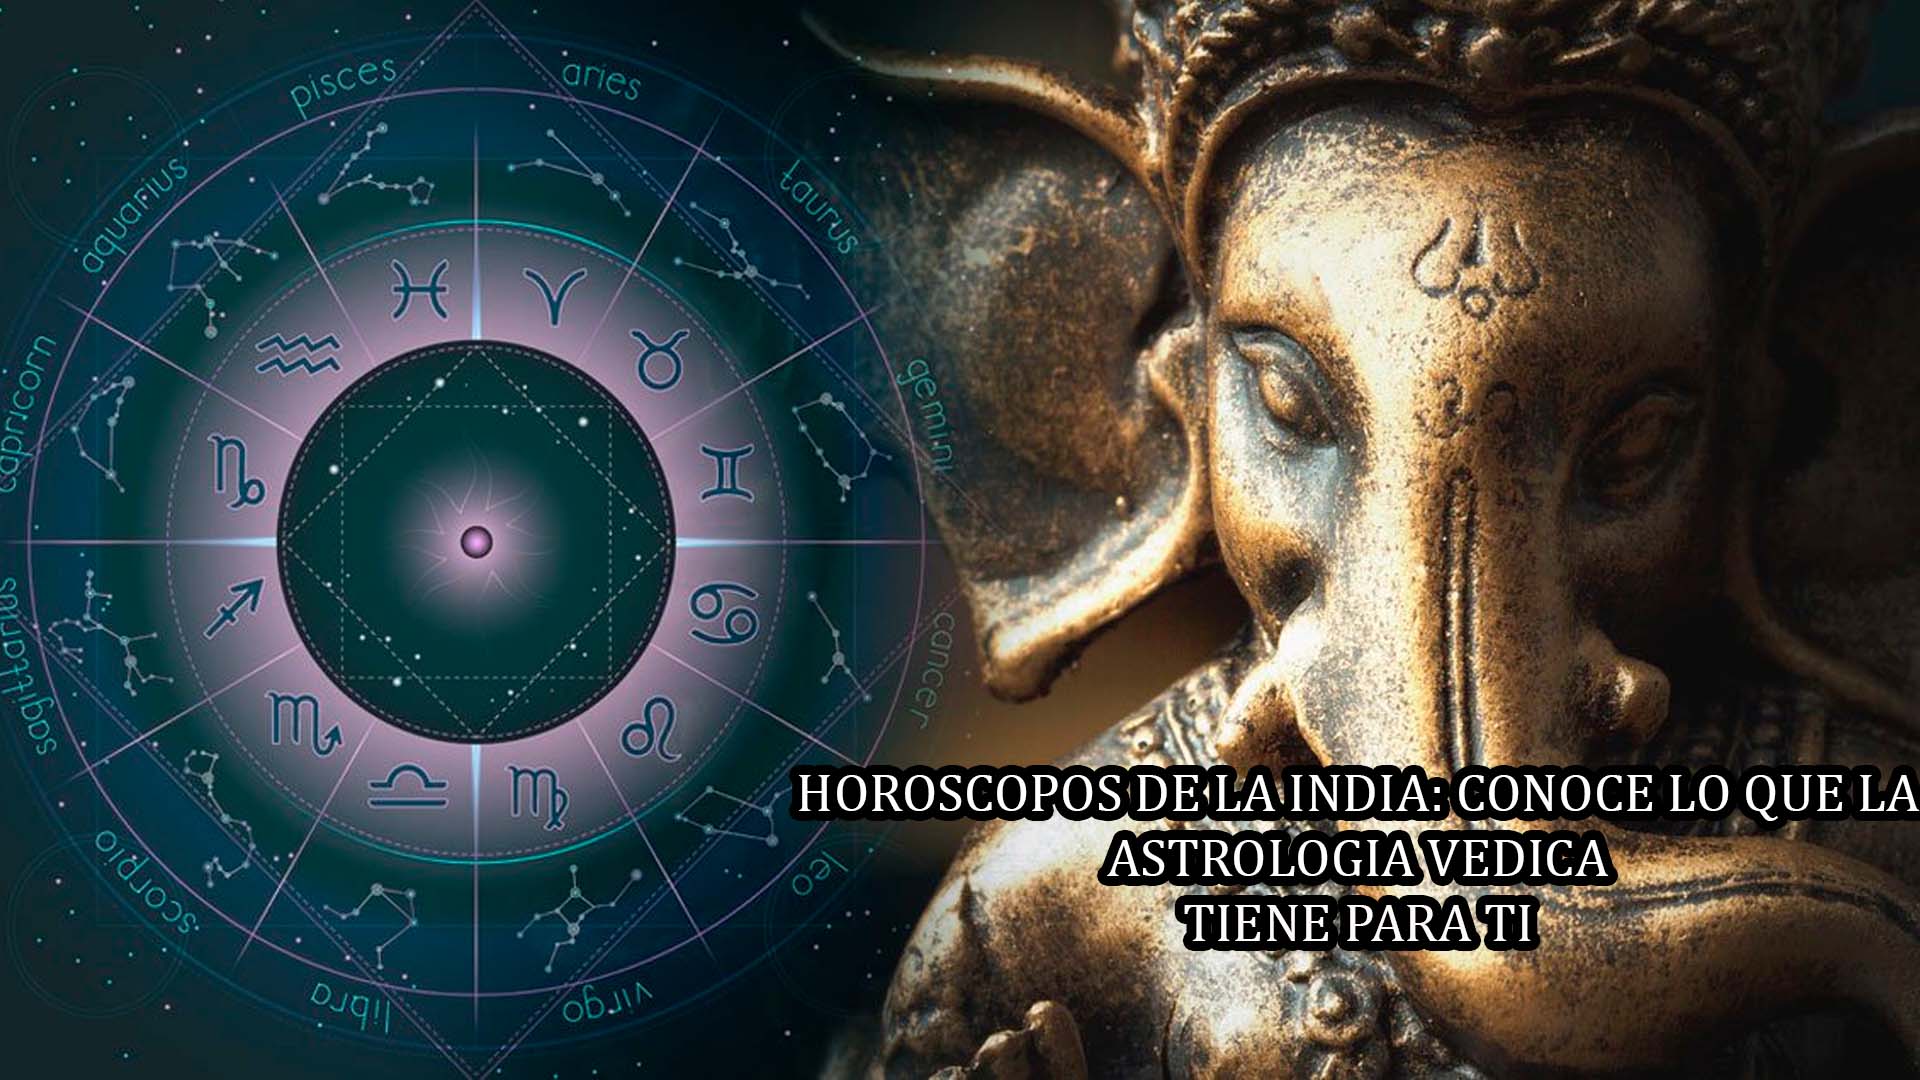 horoscopos-de-la-india-conoce-lo-que-la-astrologia-vedica-dice-de-ti